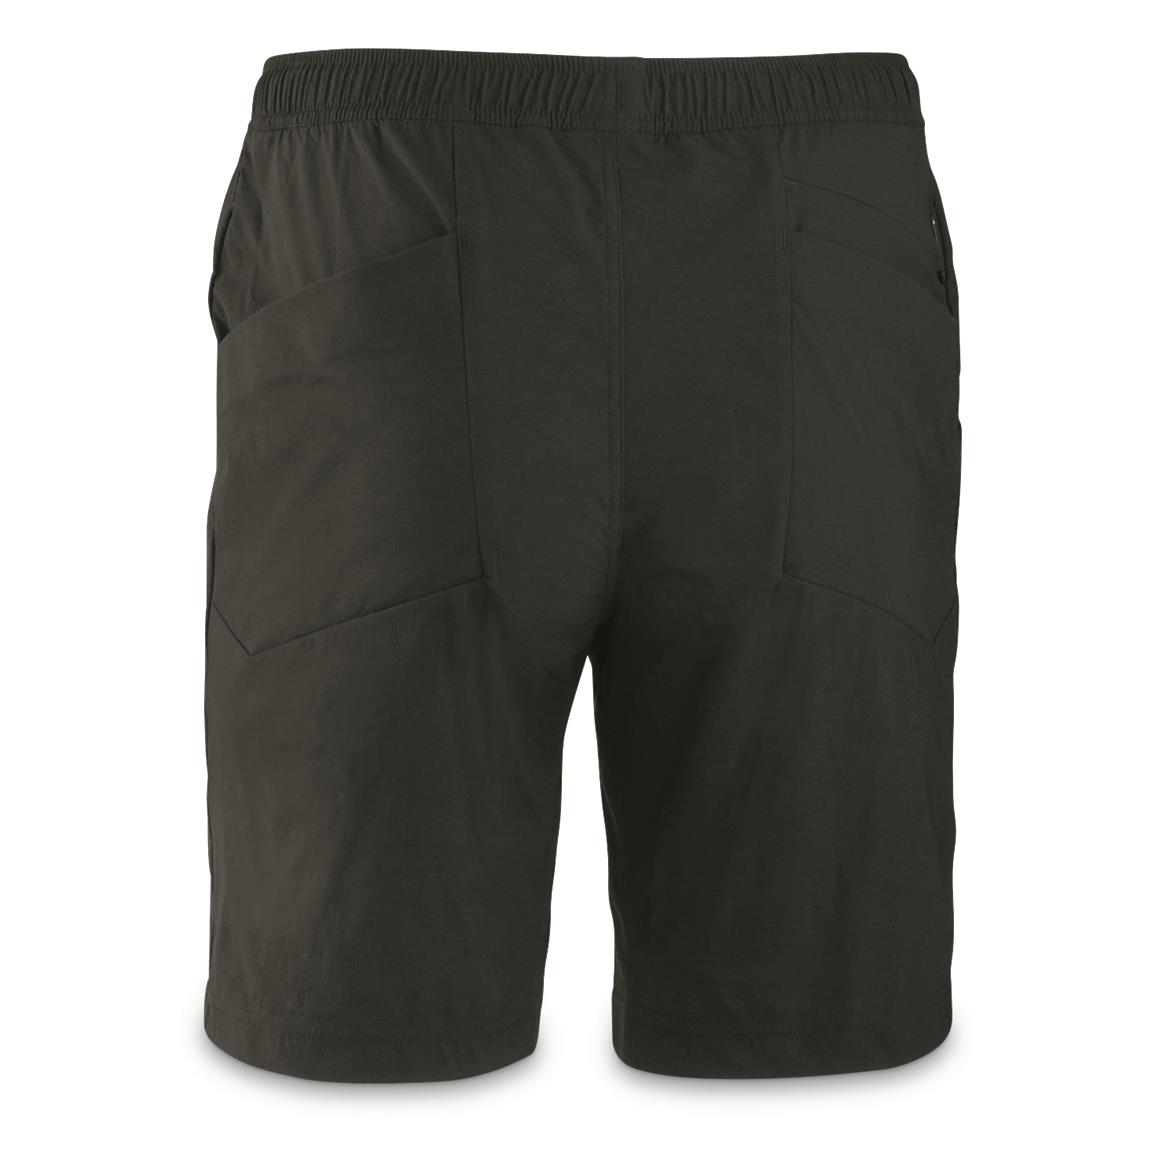 TRU-SPEC Men's 24-7 Series Original Tactical Shorts - 160179, Military ...